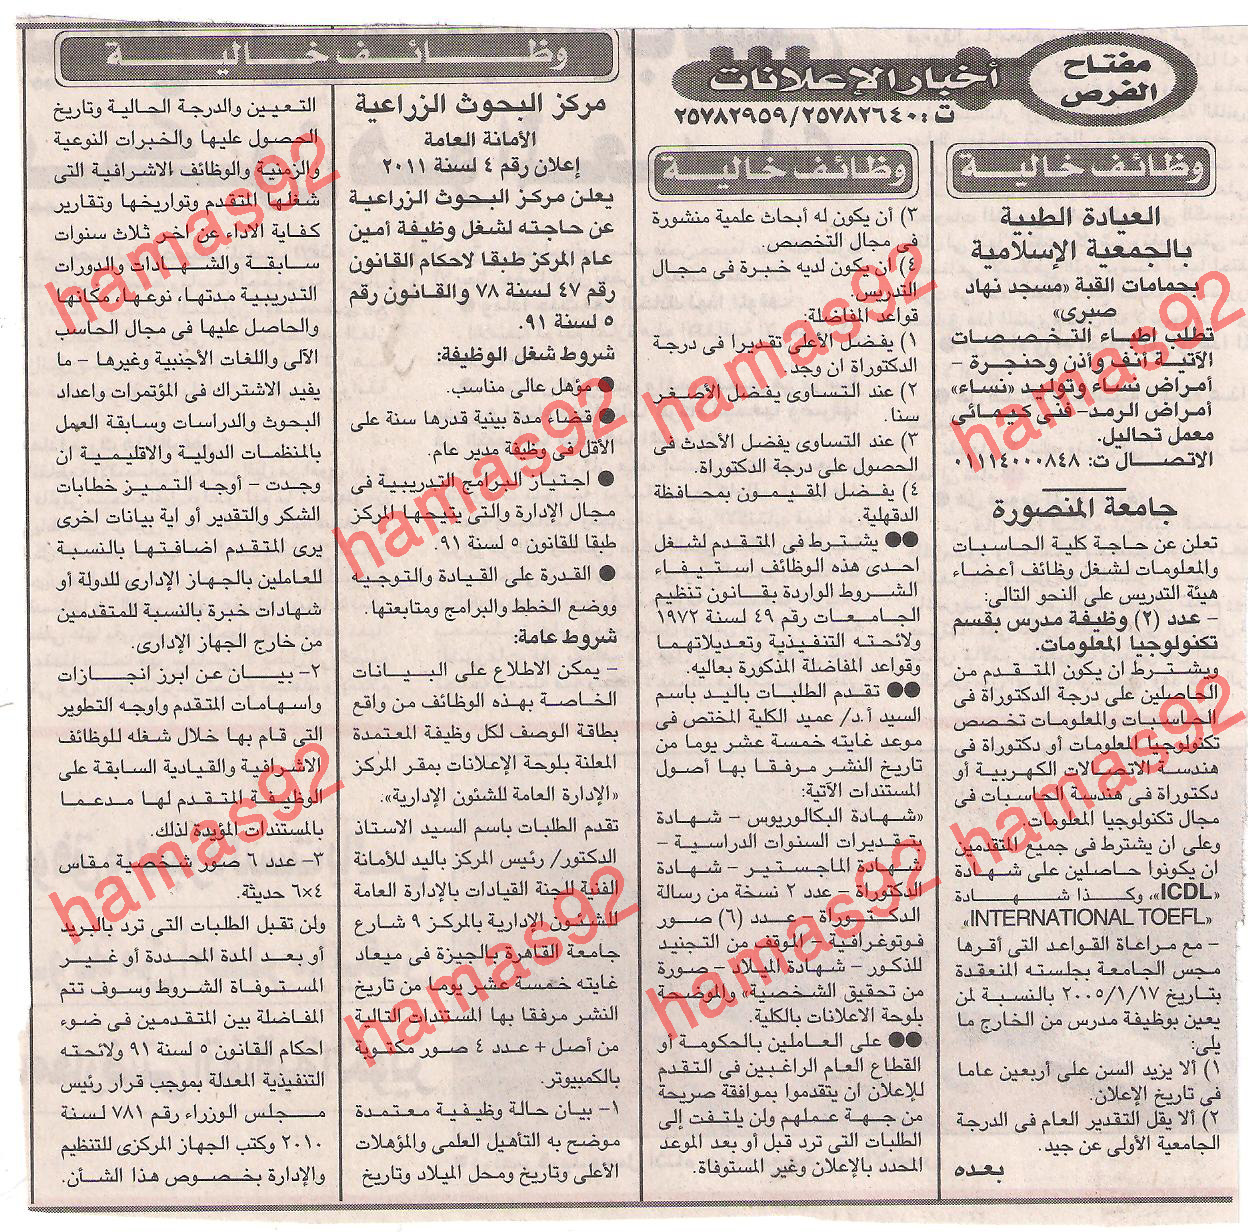 وظائف خالية من جريدة الاخبار الخميس 1/12/2011 Picture+001